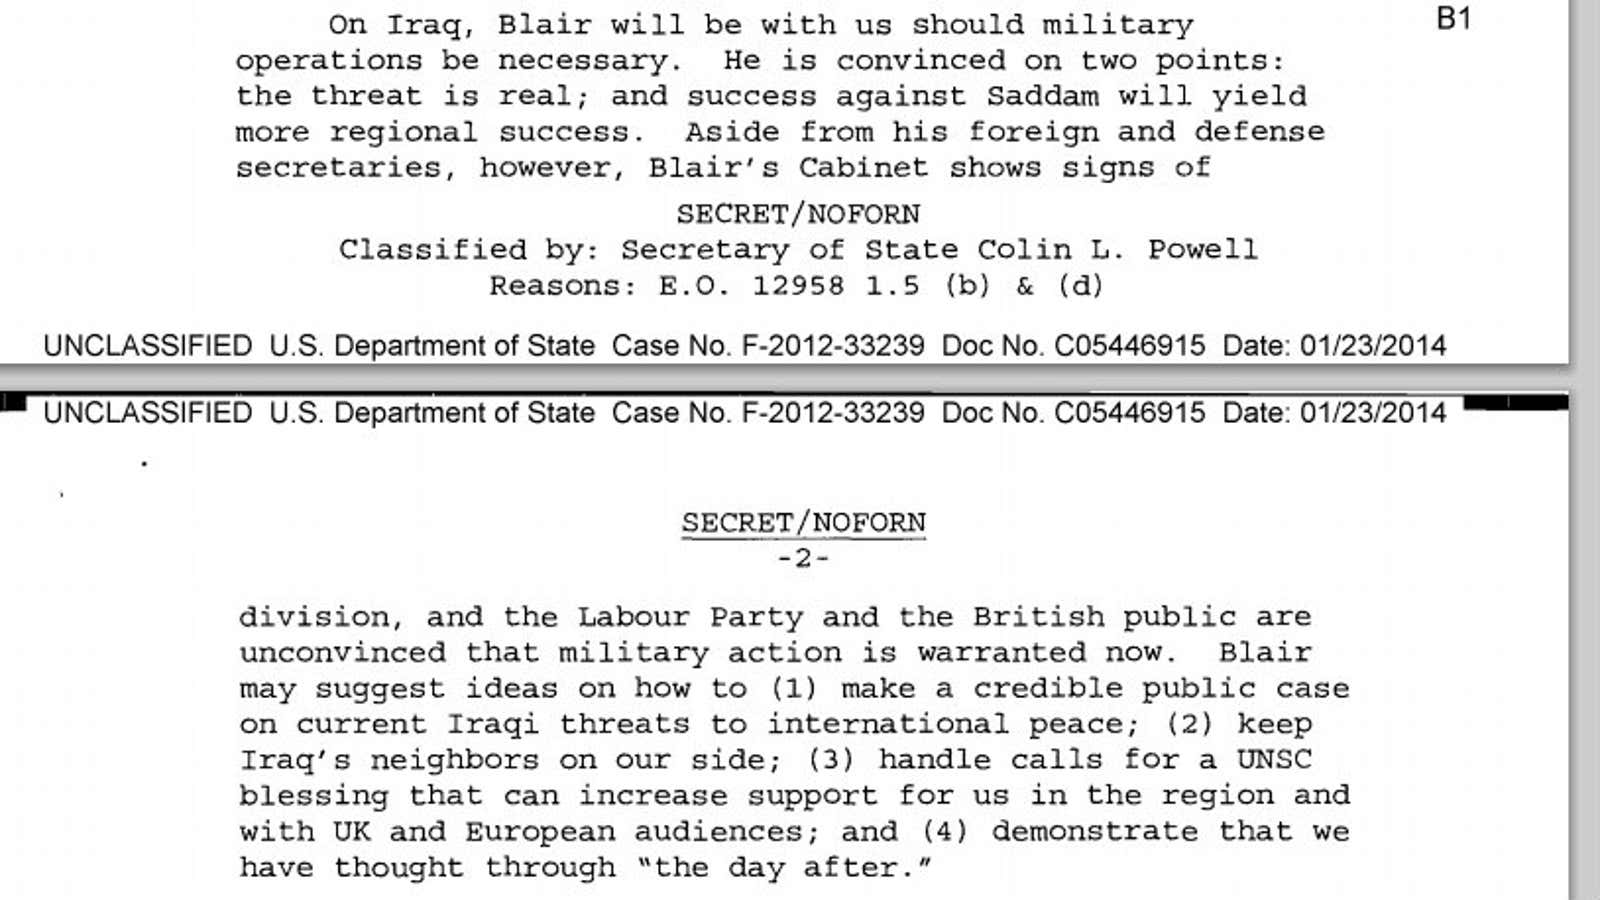 Powell’s notes on Tony Blair.